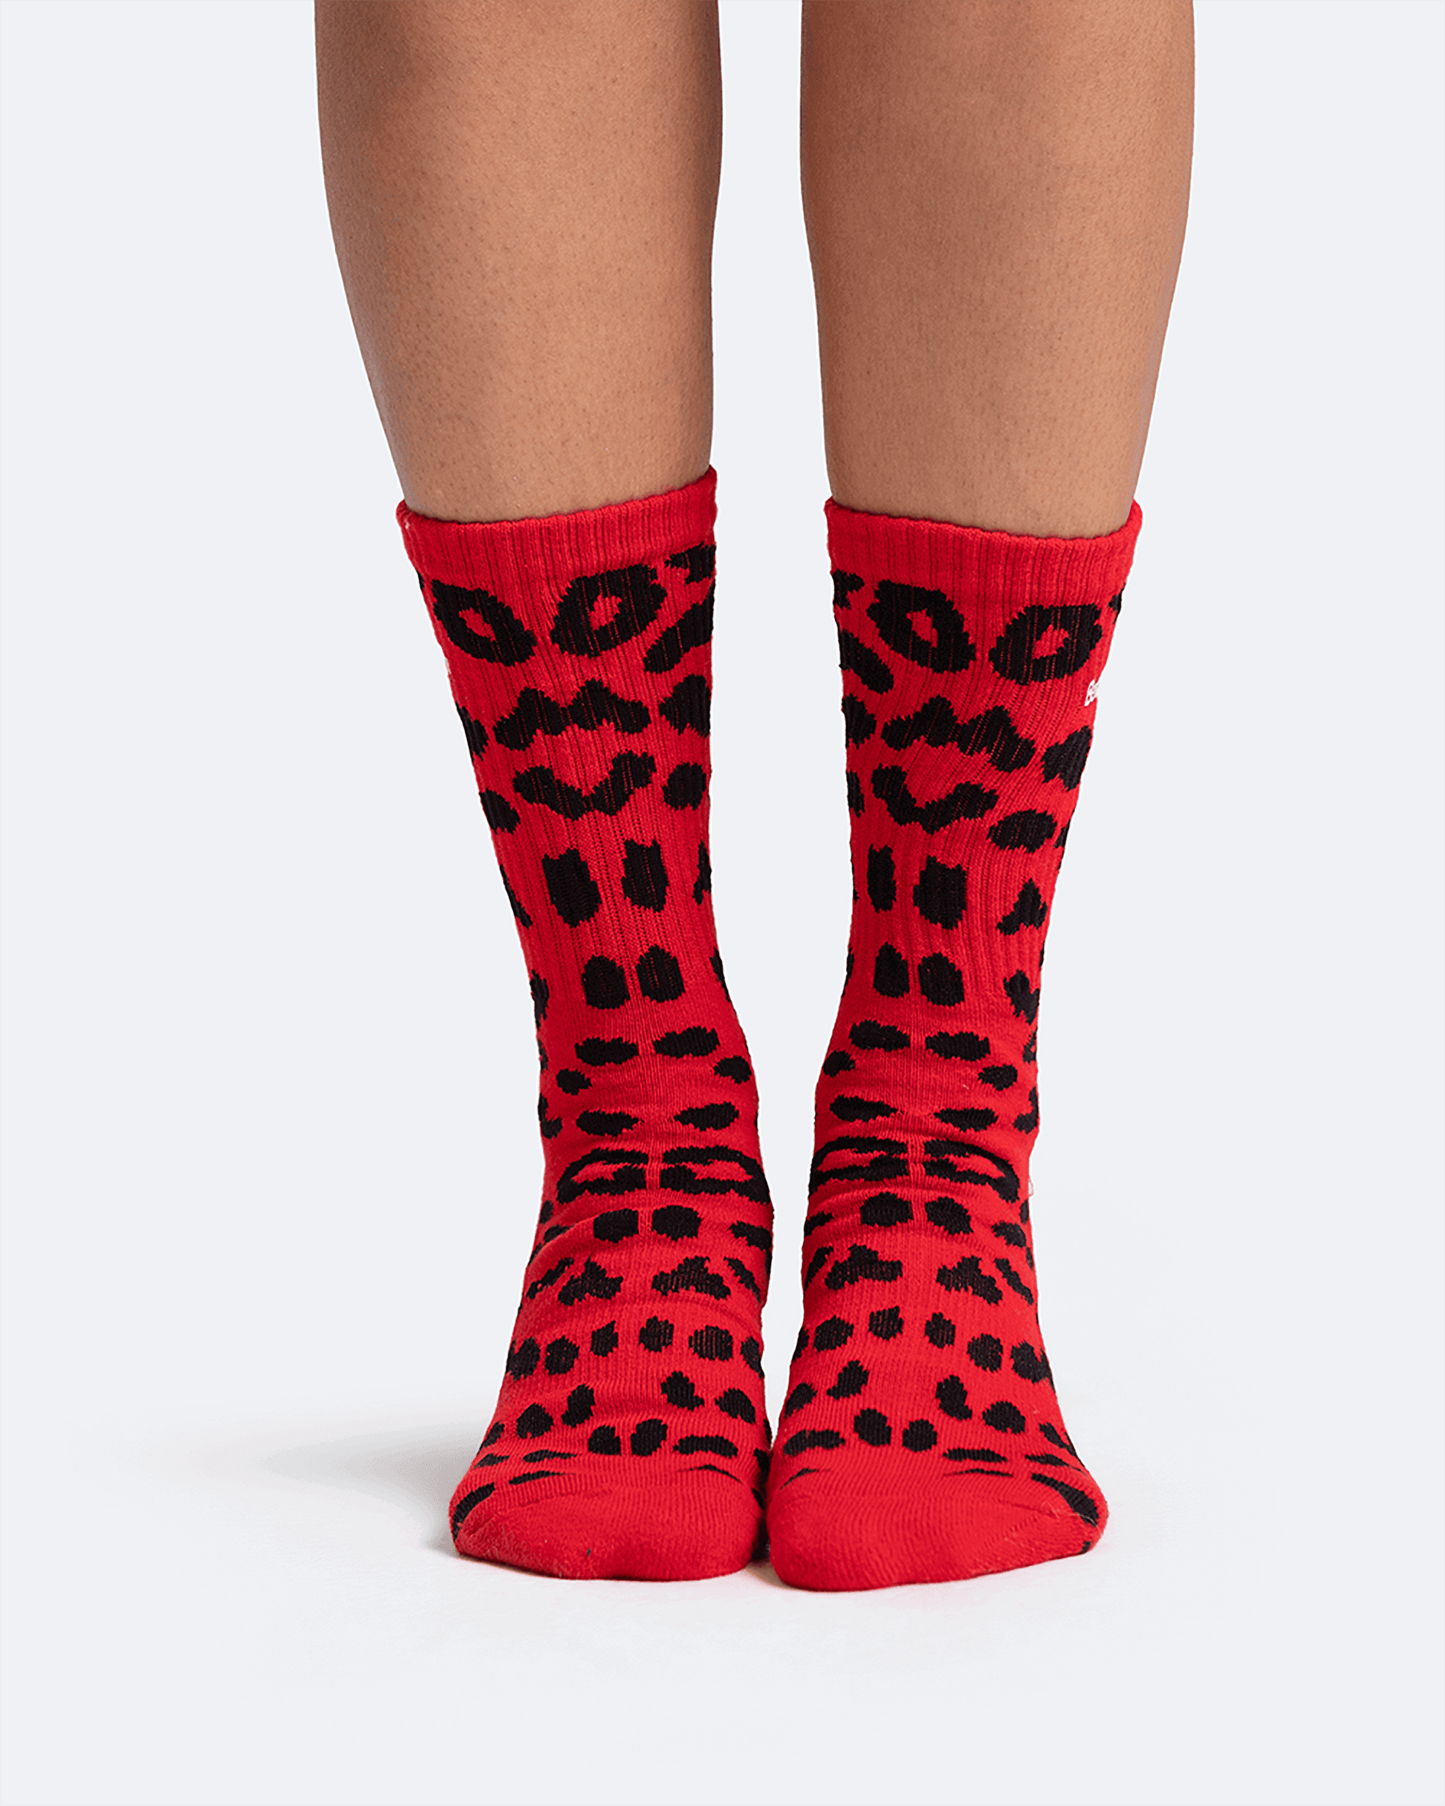 TEST - Leopard Pattern Cotton Socks